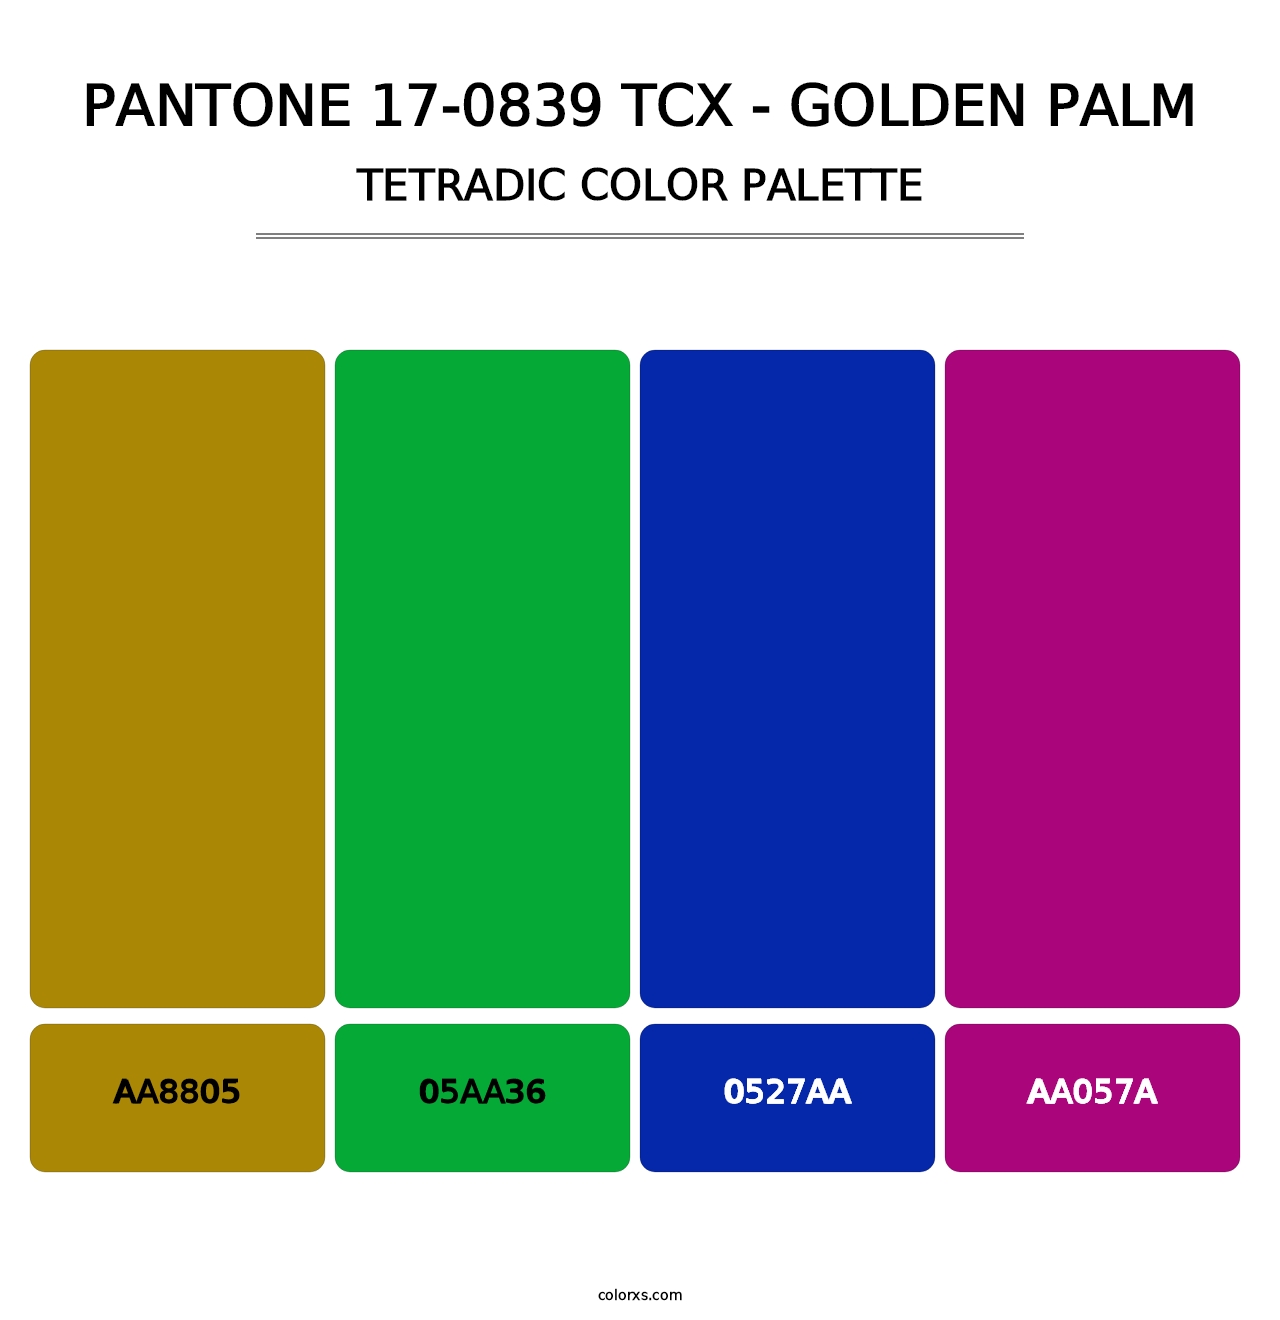 PANTONE 17-0839 TCX - Golden Palm - Tetradic Color Palette